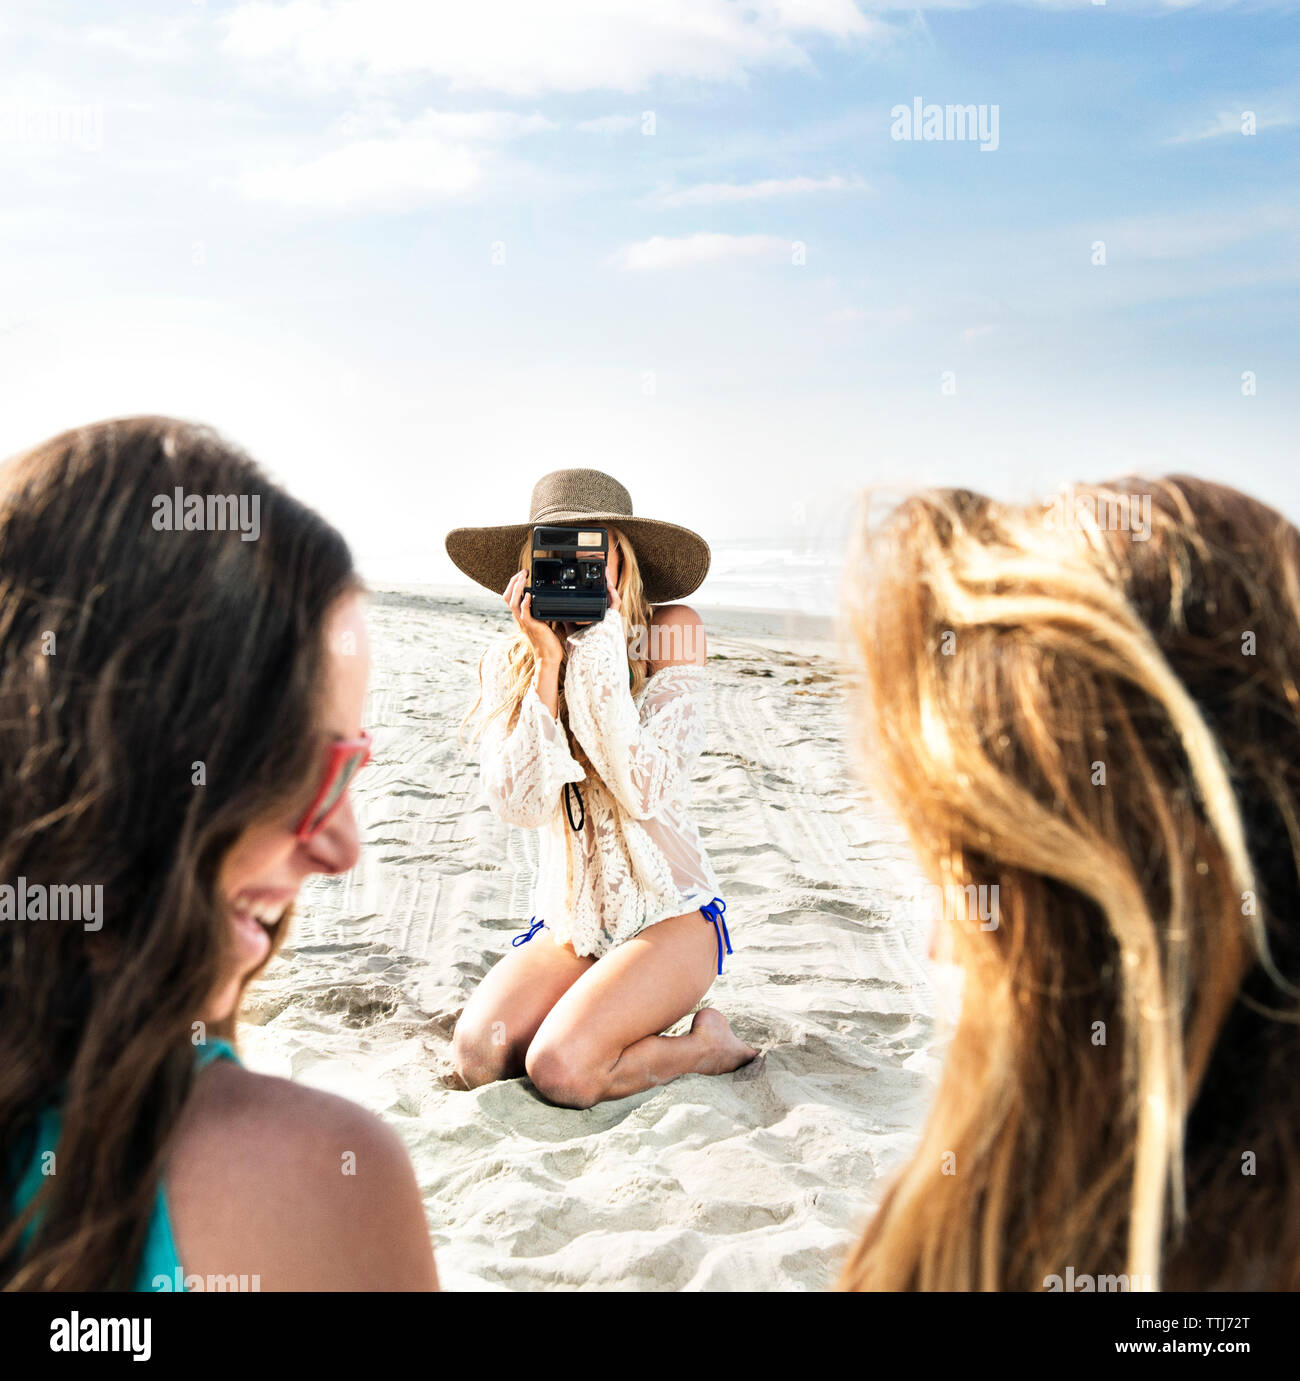 Photographier une femme à la plage d'amis Banque D'Images